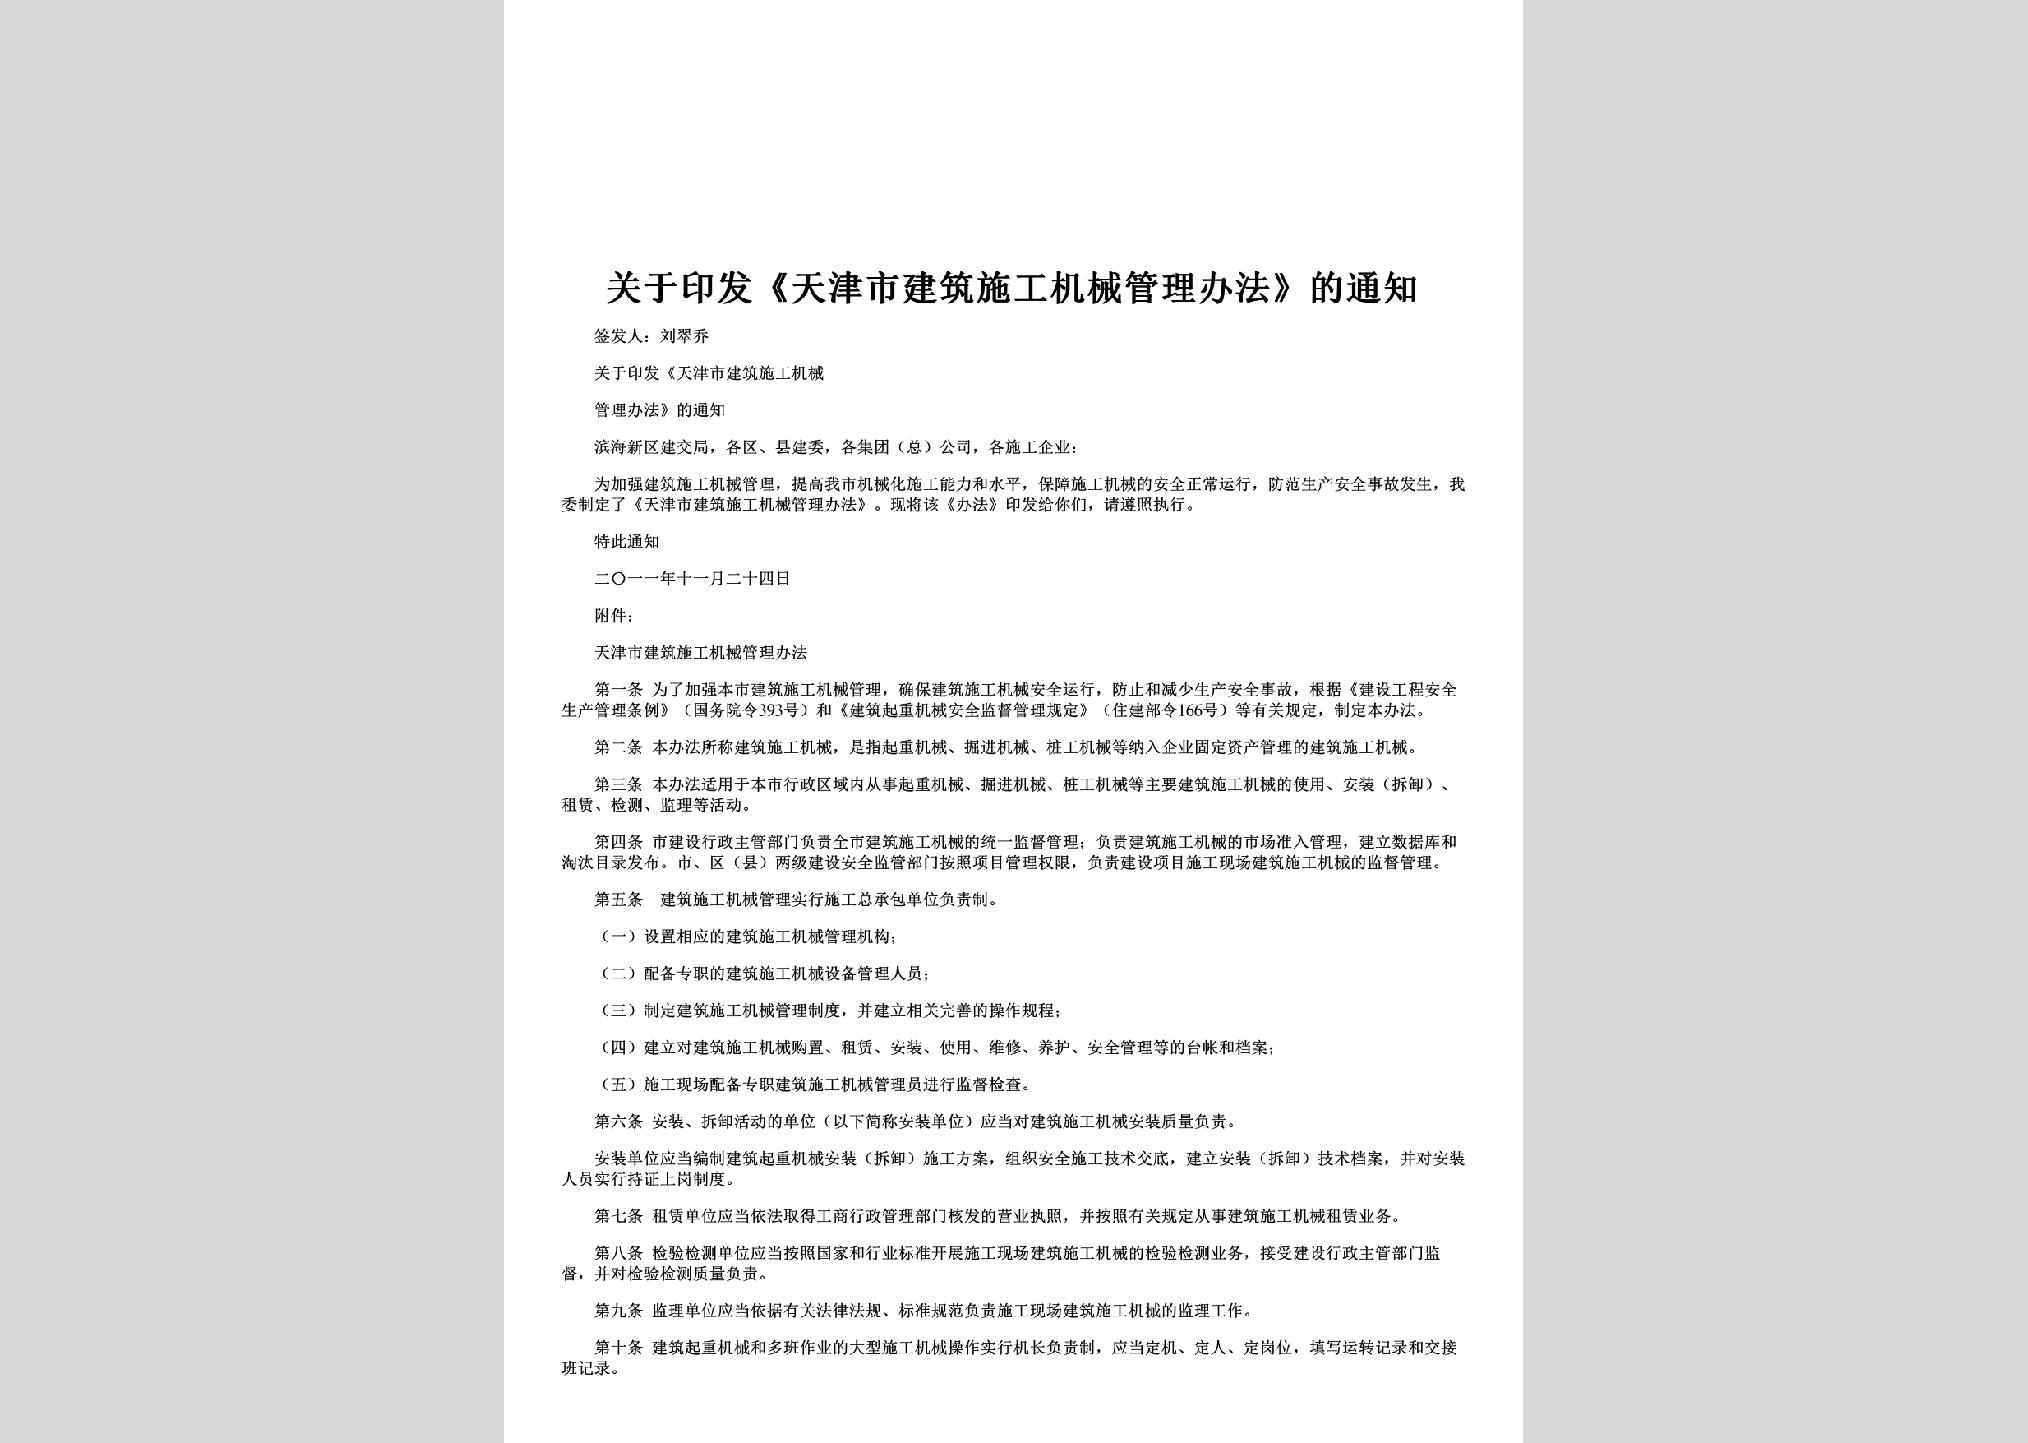 TJ-GYYFTJS-2011：关于印发《天津市建筑施工机械管理办法》的通知